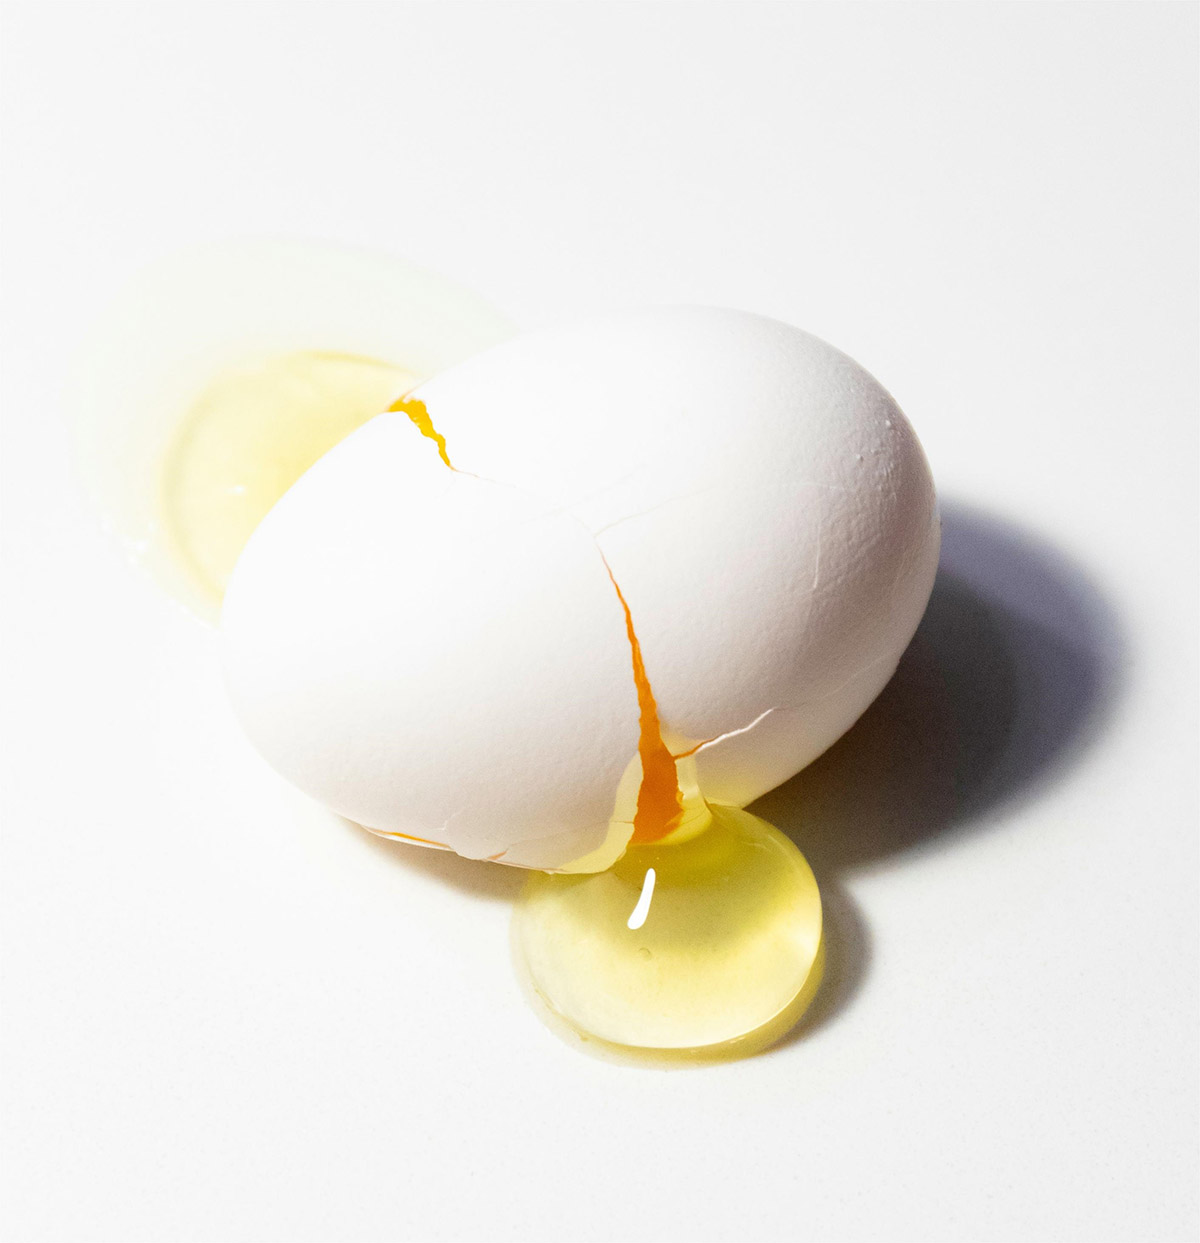 Fig.1 Egg phosphatidylcholine. (By Madison Oren, Free to use under the Unsplash License, https://unsplash.com/photos/white-egg-on-white-surface-b9id_N3uI3E )